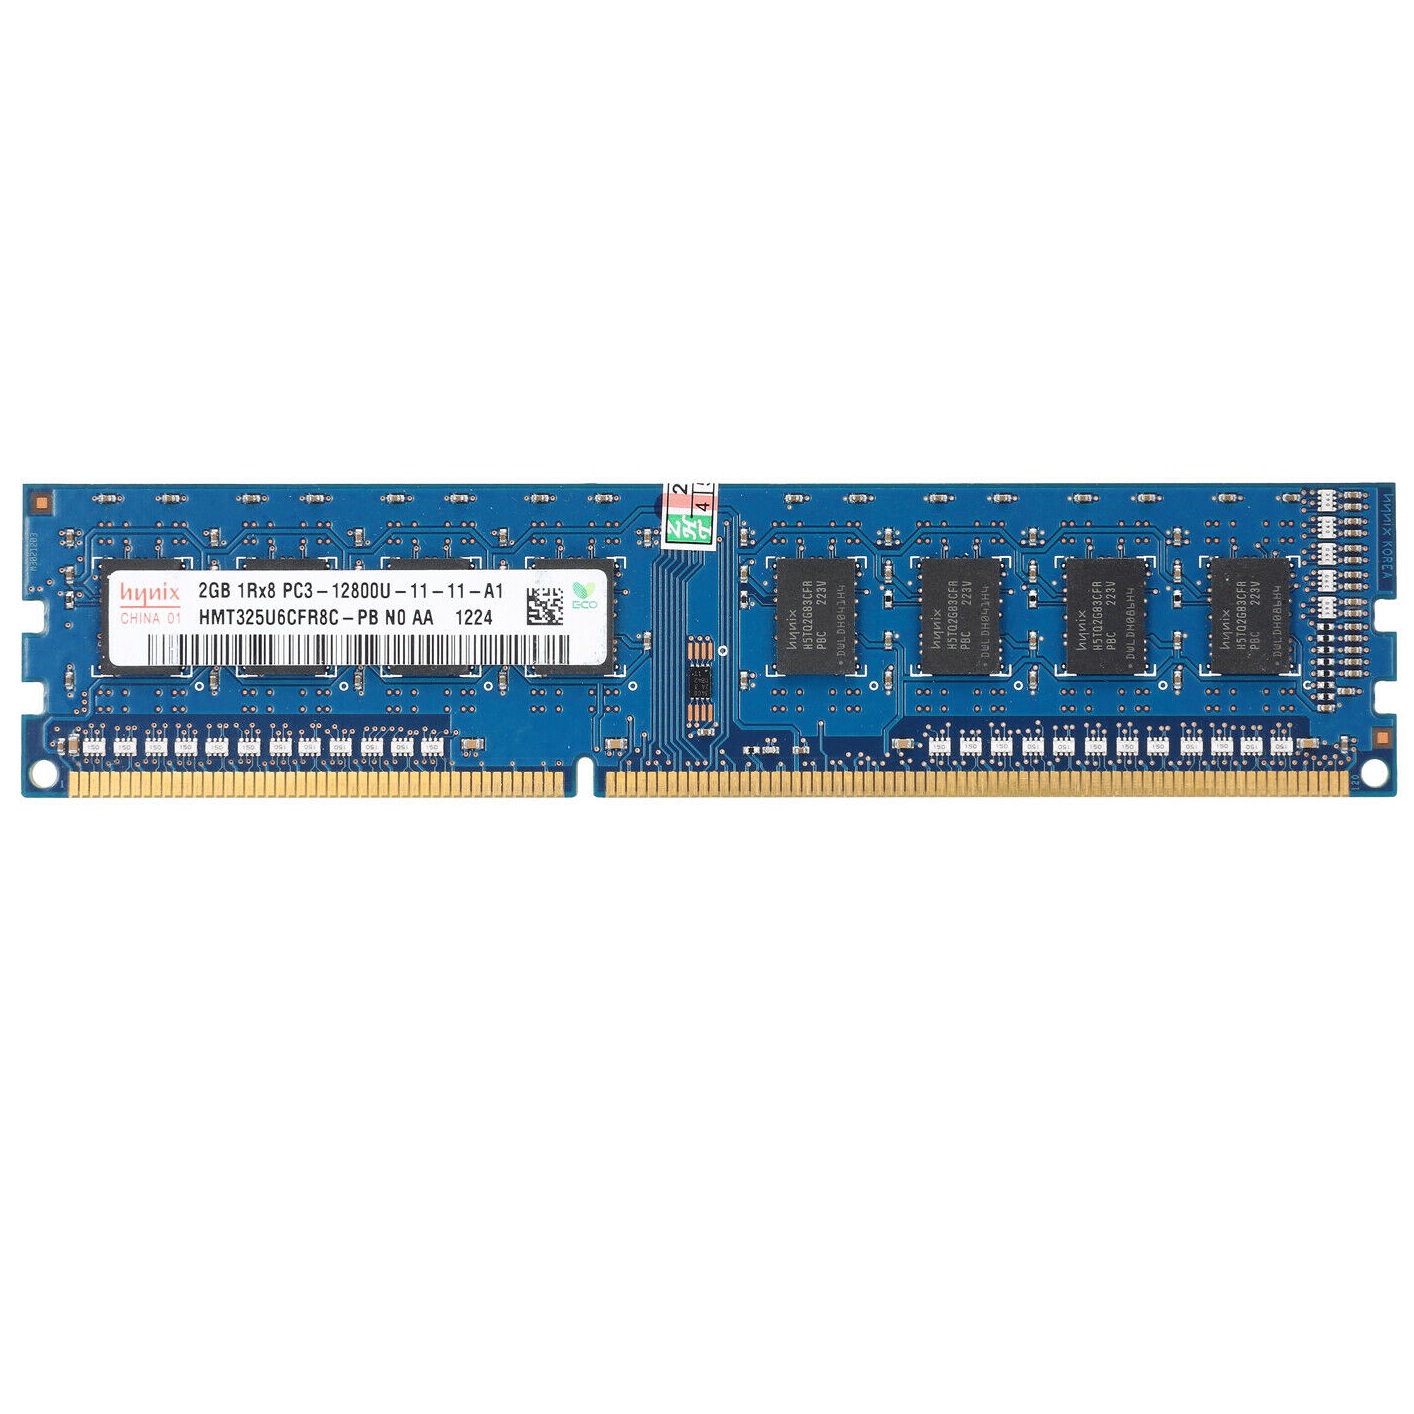 رم دسکتاپ DDR3 تک کاناله 1600 مگاهرتز CL11 هاینیکس مدل HMT325U6EFR8C-PB ظرفیت 2 گیگابایت